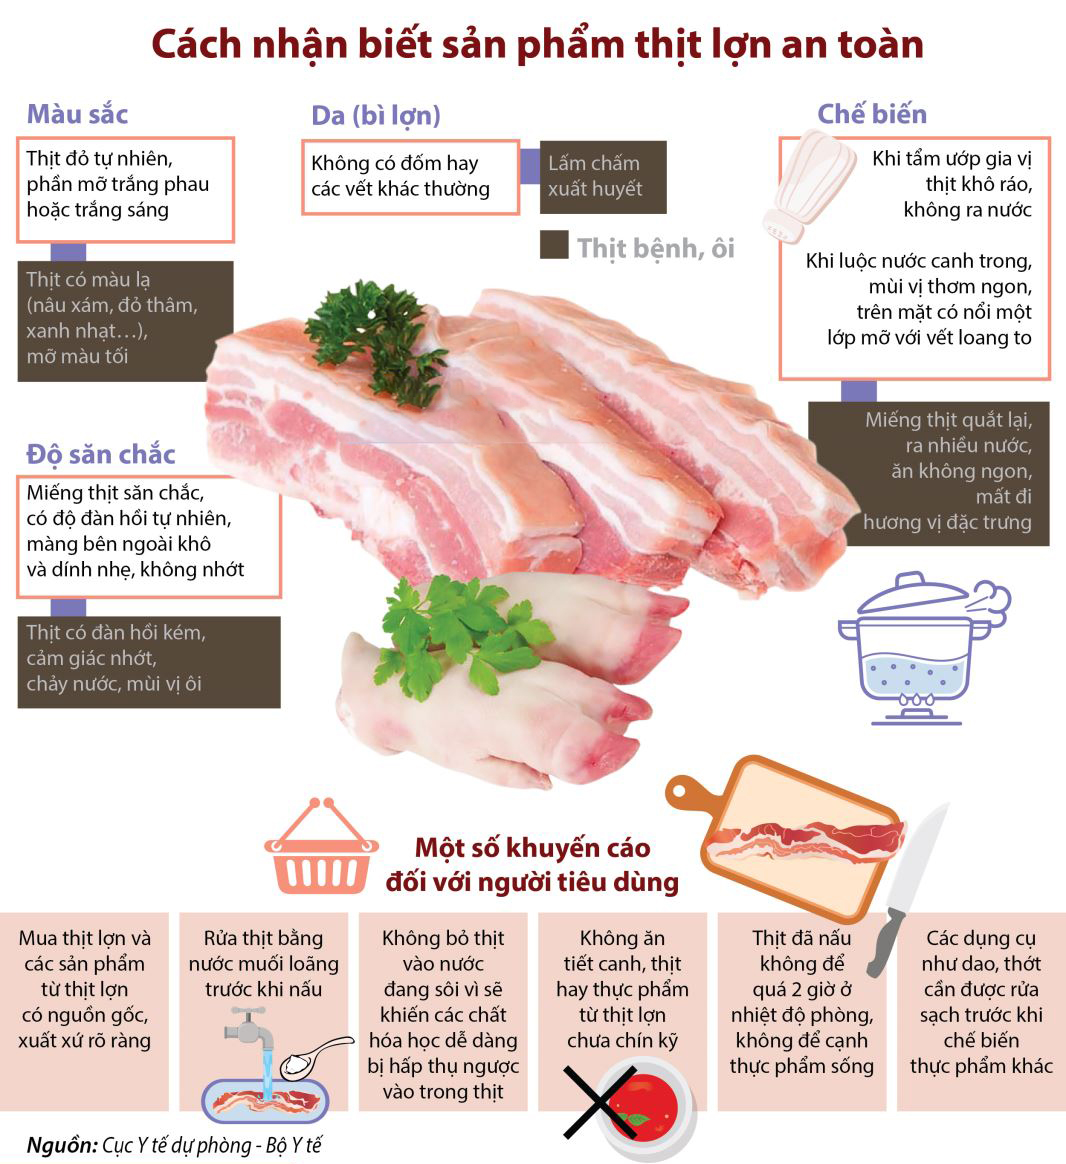 Thành phần giá trị dinh dưỡng bên trong thịt lợn / heo